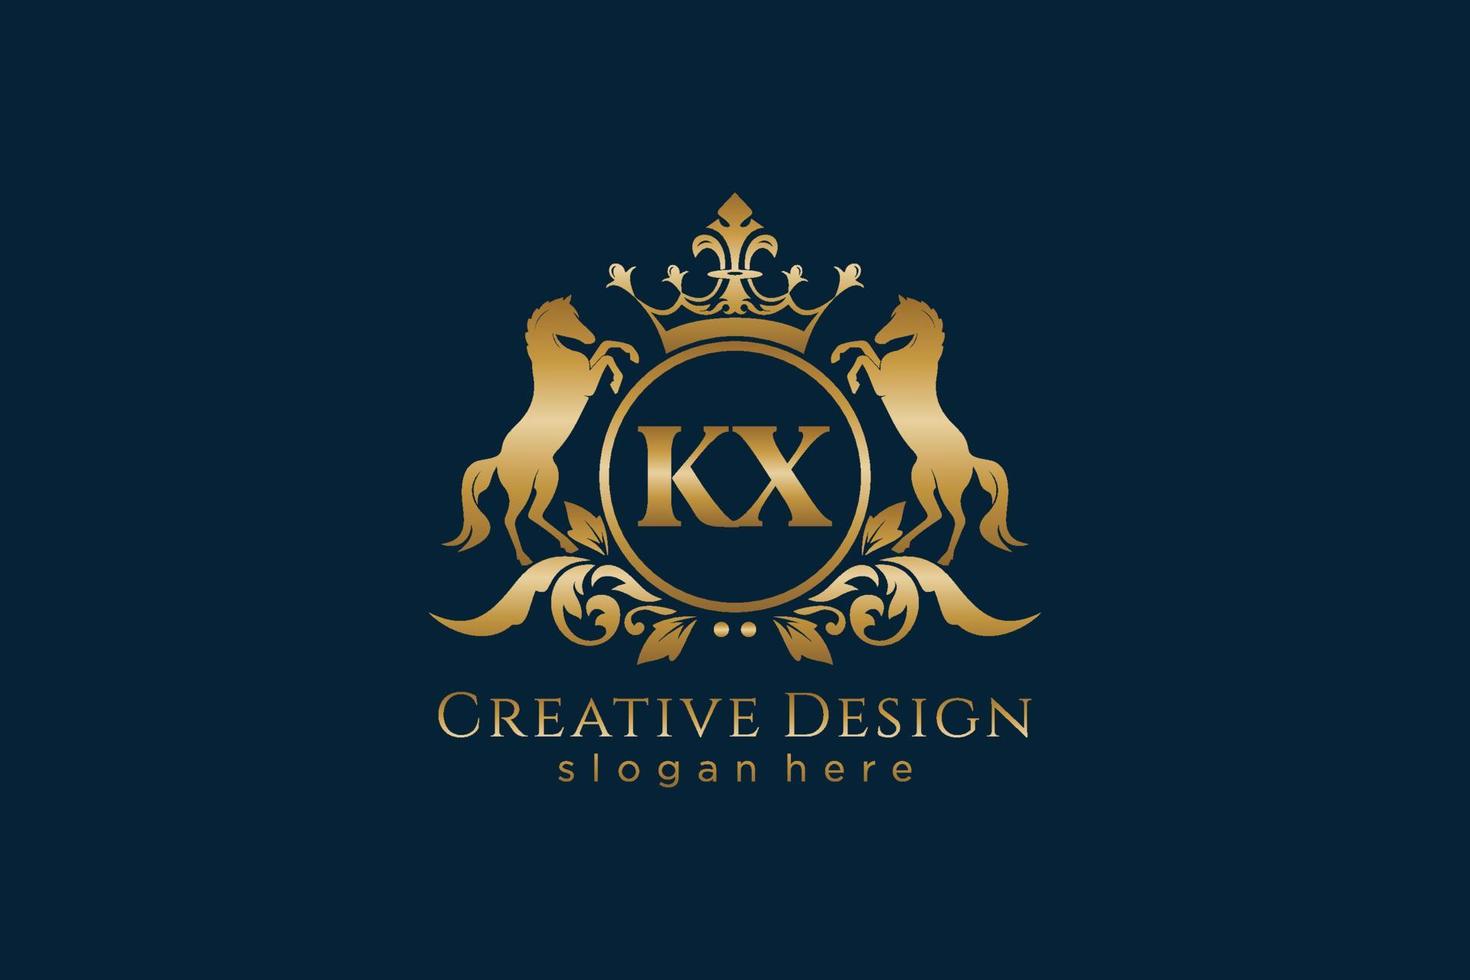 cresta dorada retro kx inicial con círculo y dos caballos, plantilla de placa con pergaminos y corona real, perfecta para proyectos de marca de lujo vector